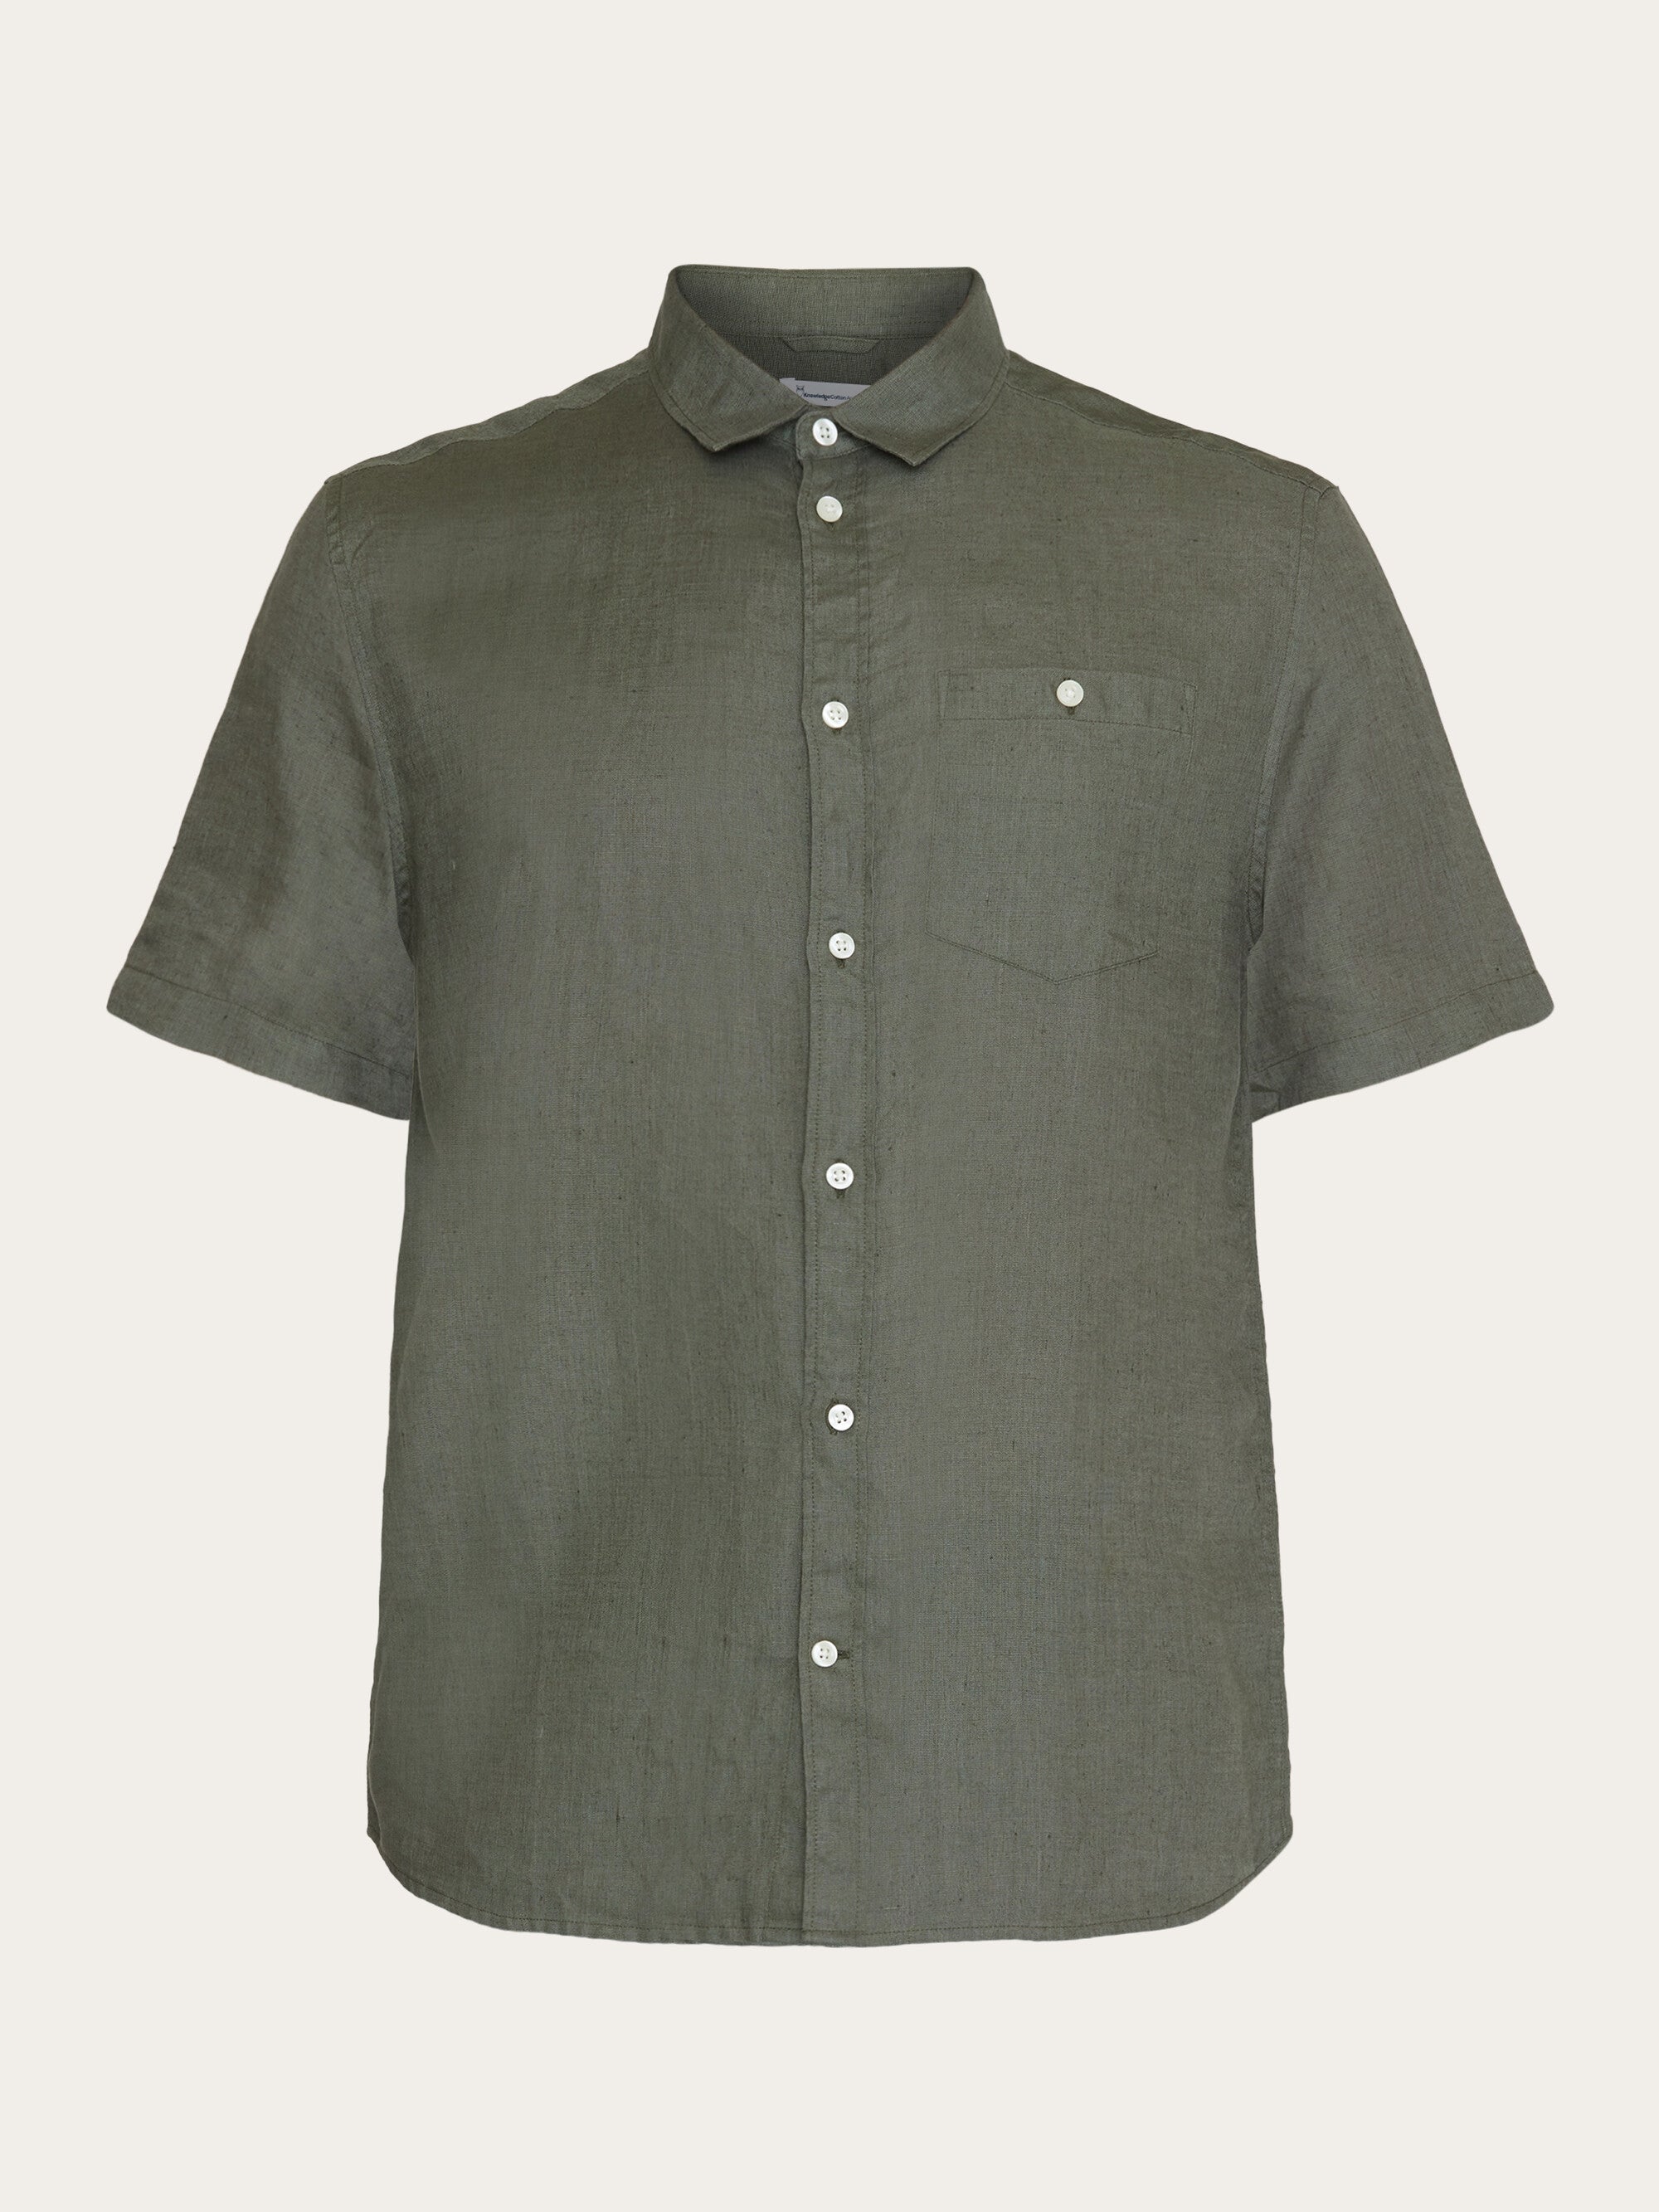 Lucky Brand Linen Blend Shirt - NWT Mens Size Medium Dark Olive